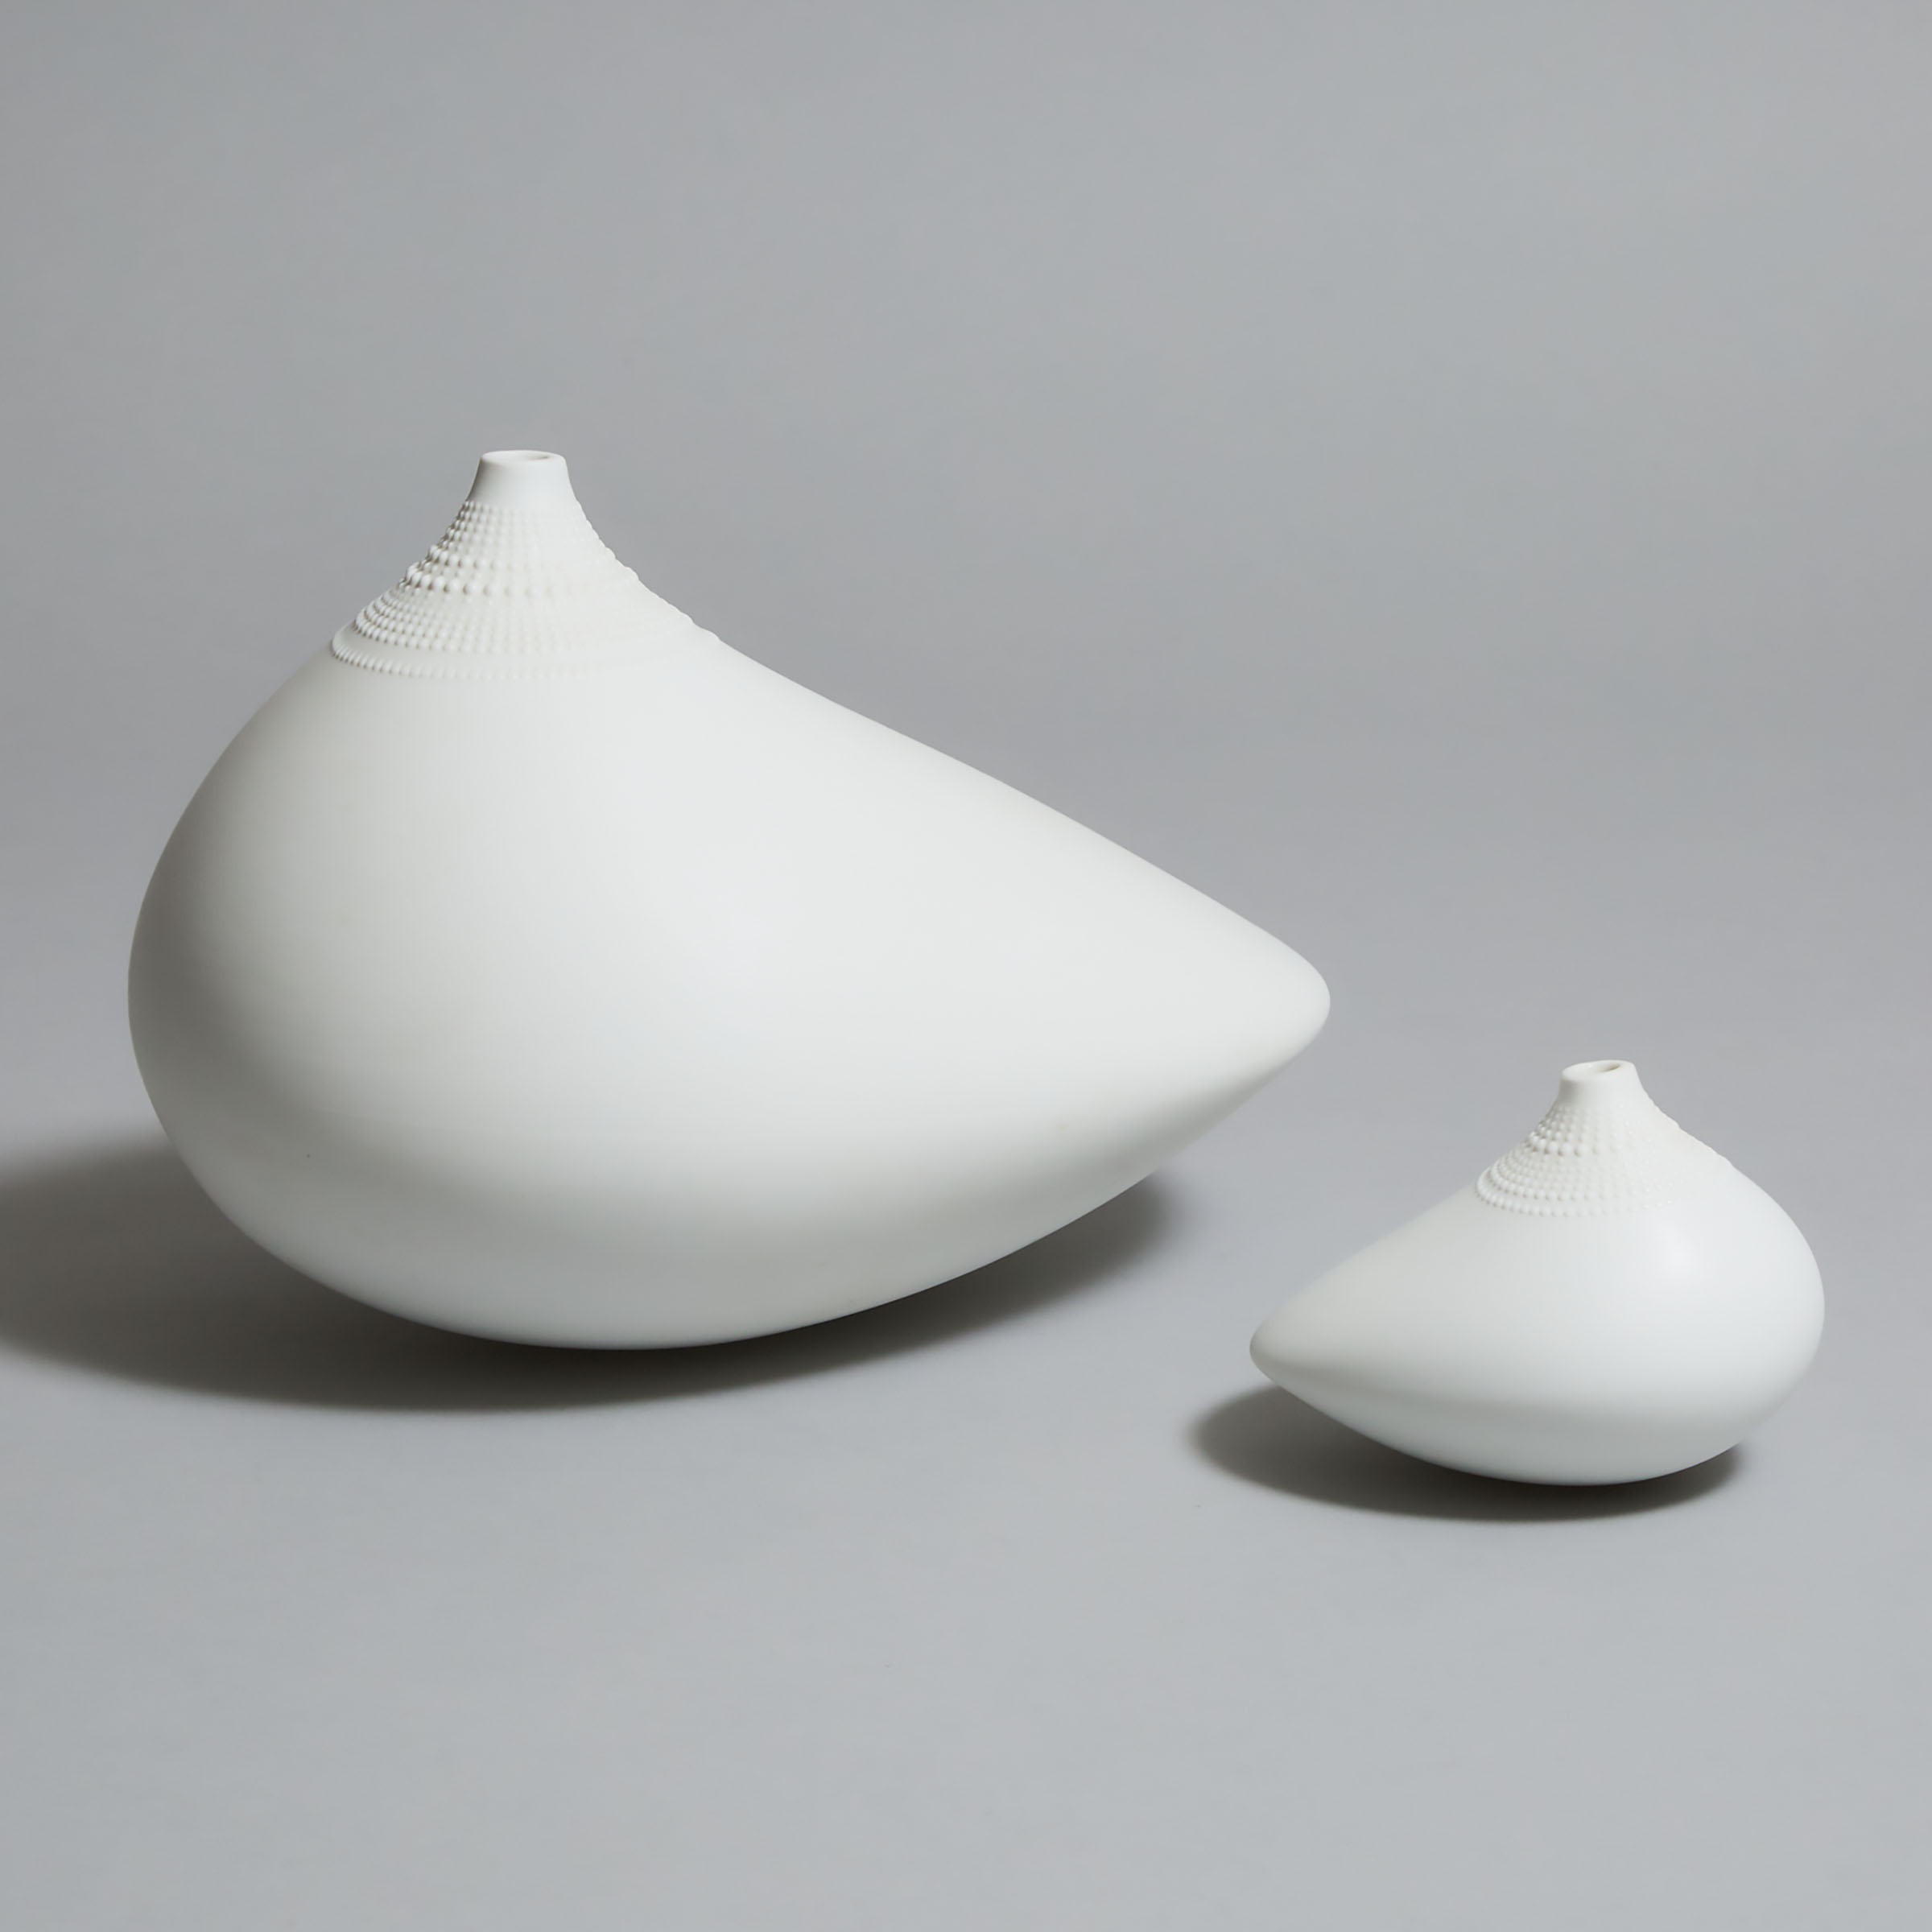 Two Rosenthal 'Pollo' Vases, Tapio Wirkkala, 20th century